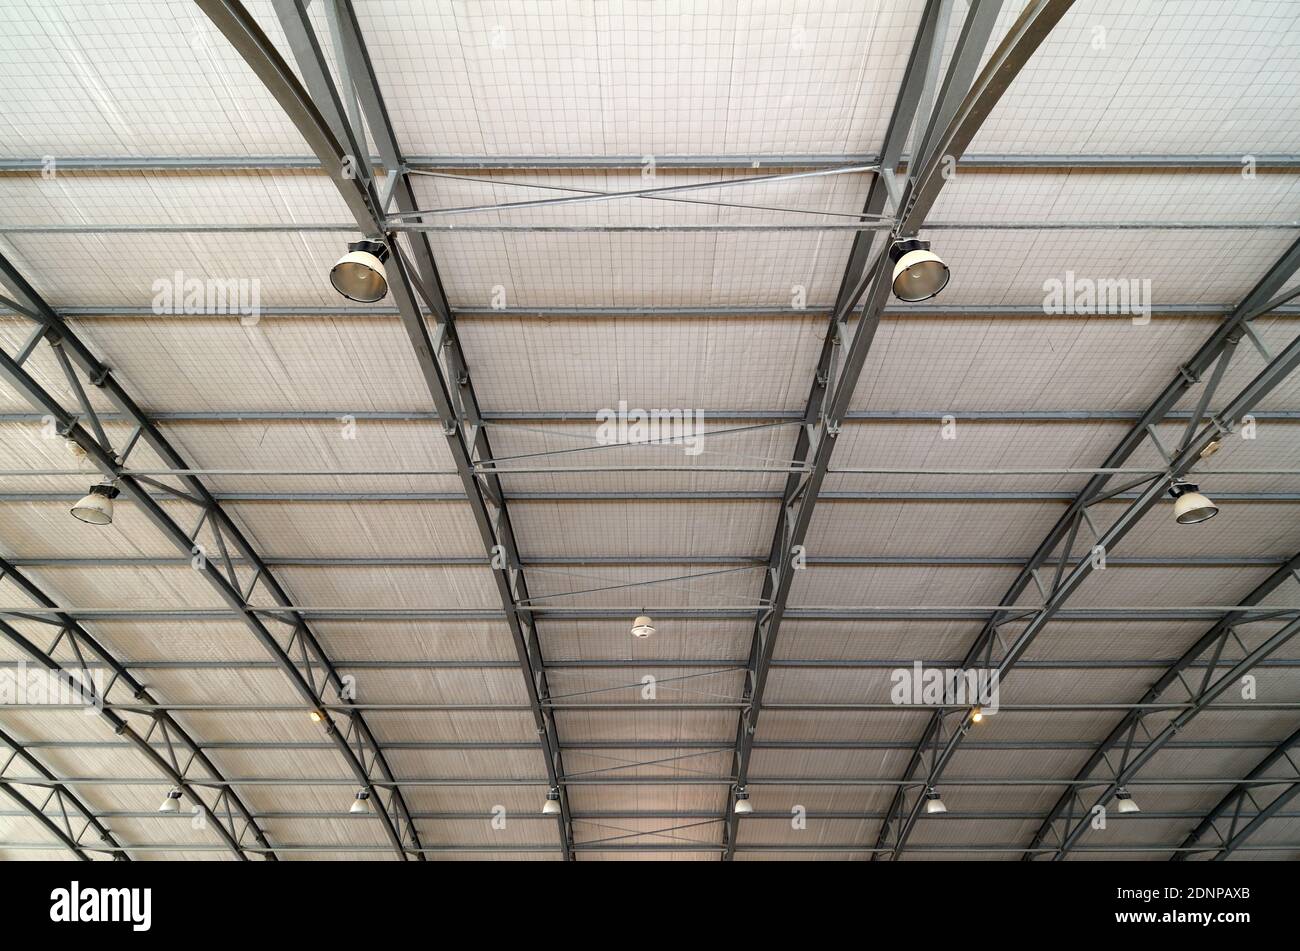 Cadre de toit en métal ou structure de toit du bâtiment de stade intérieur Avec poutres et barres métalliques Banque D'Images